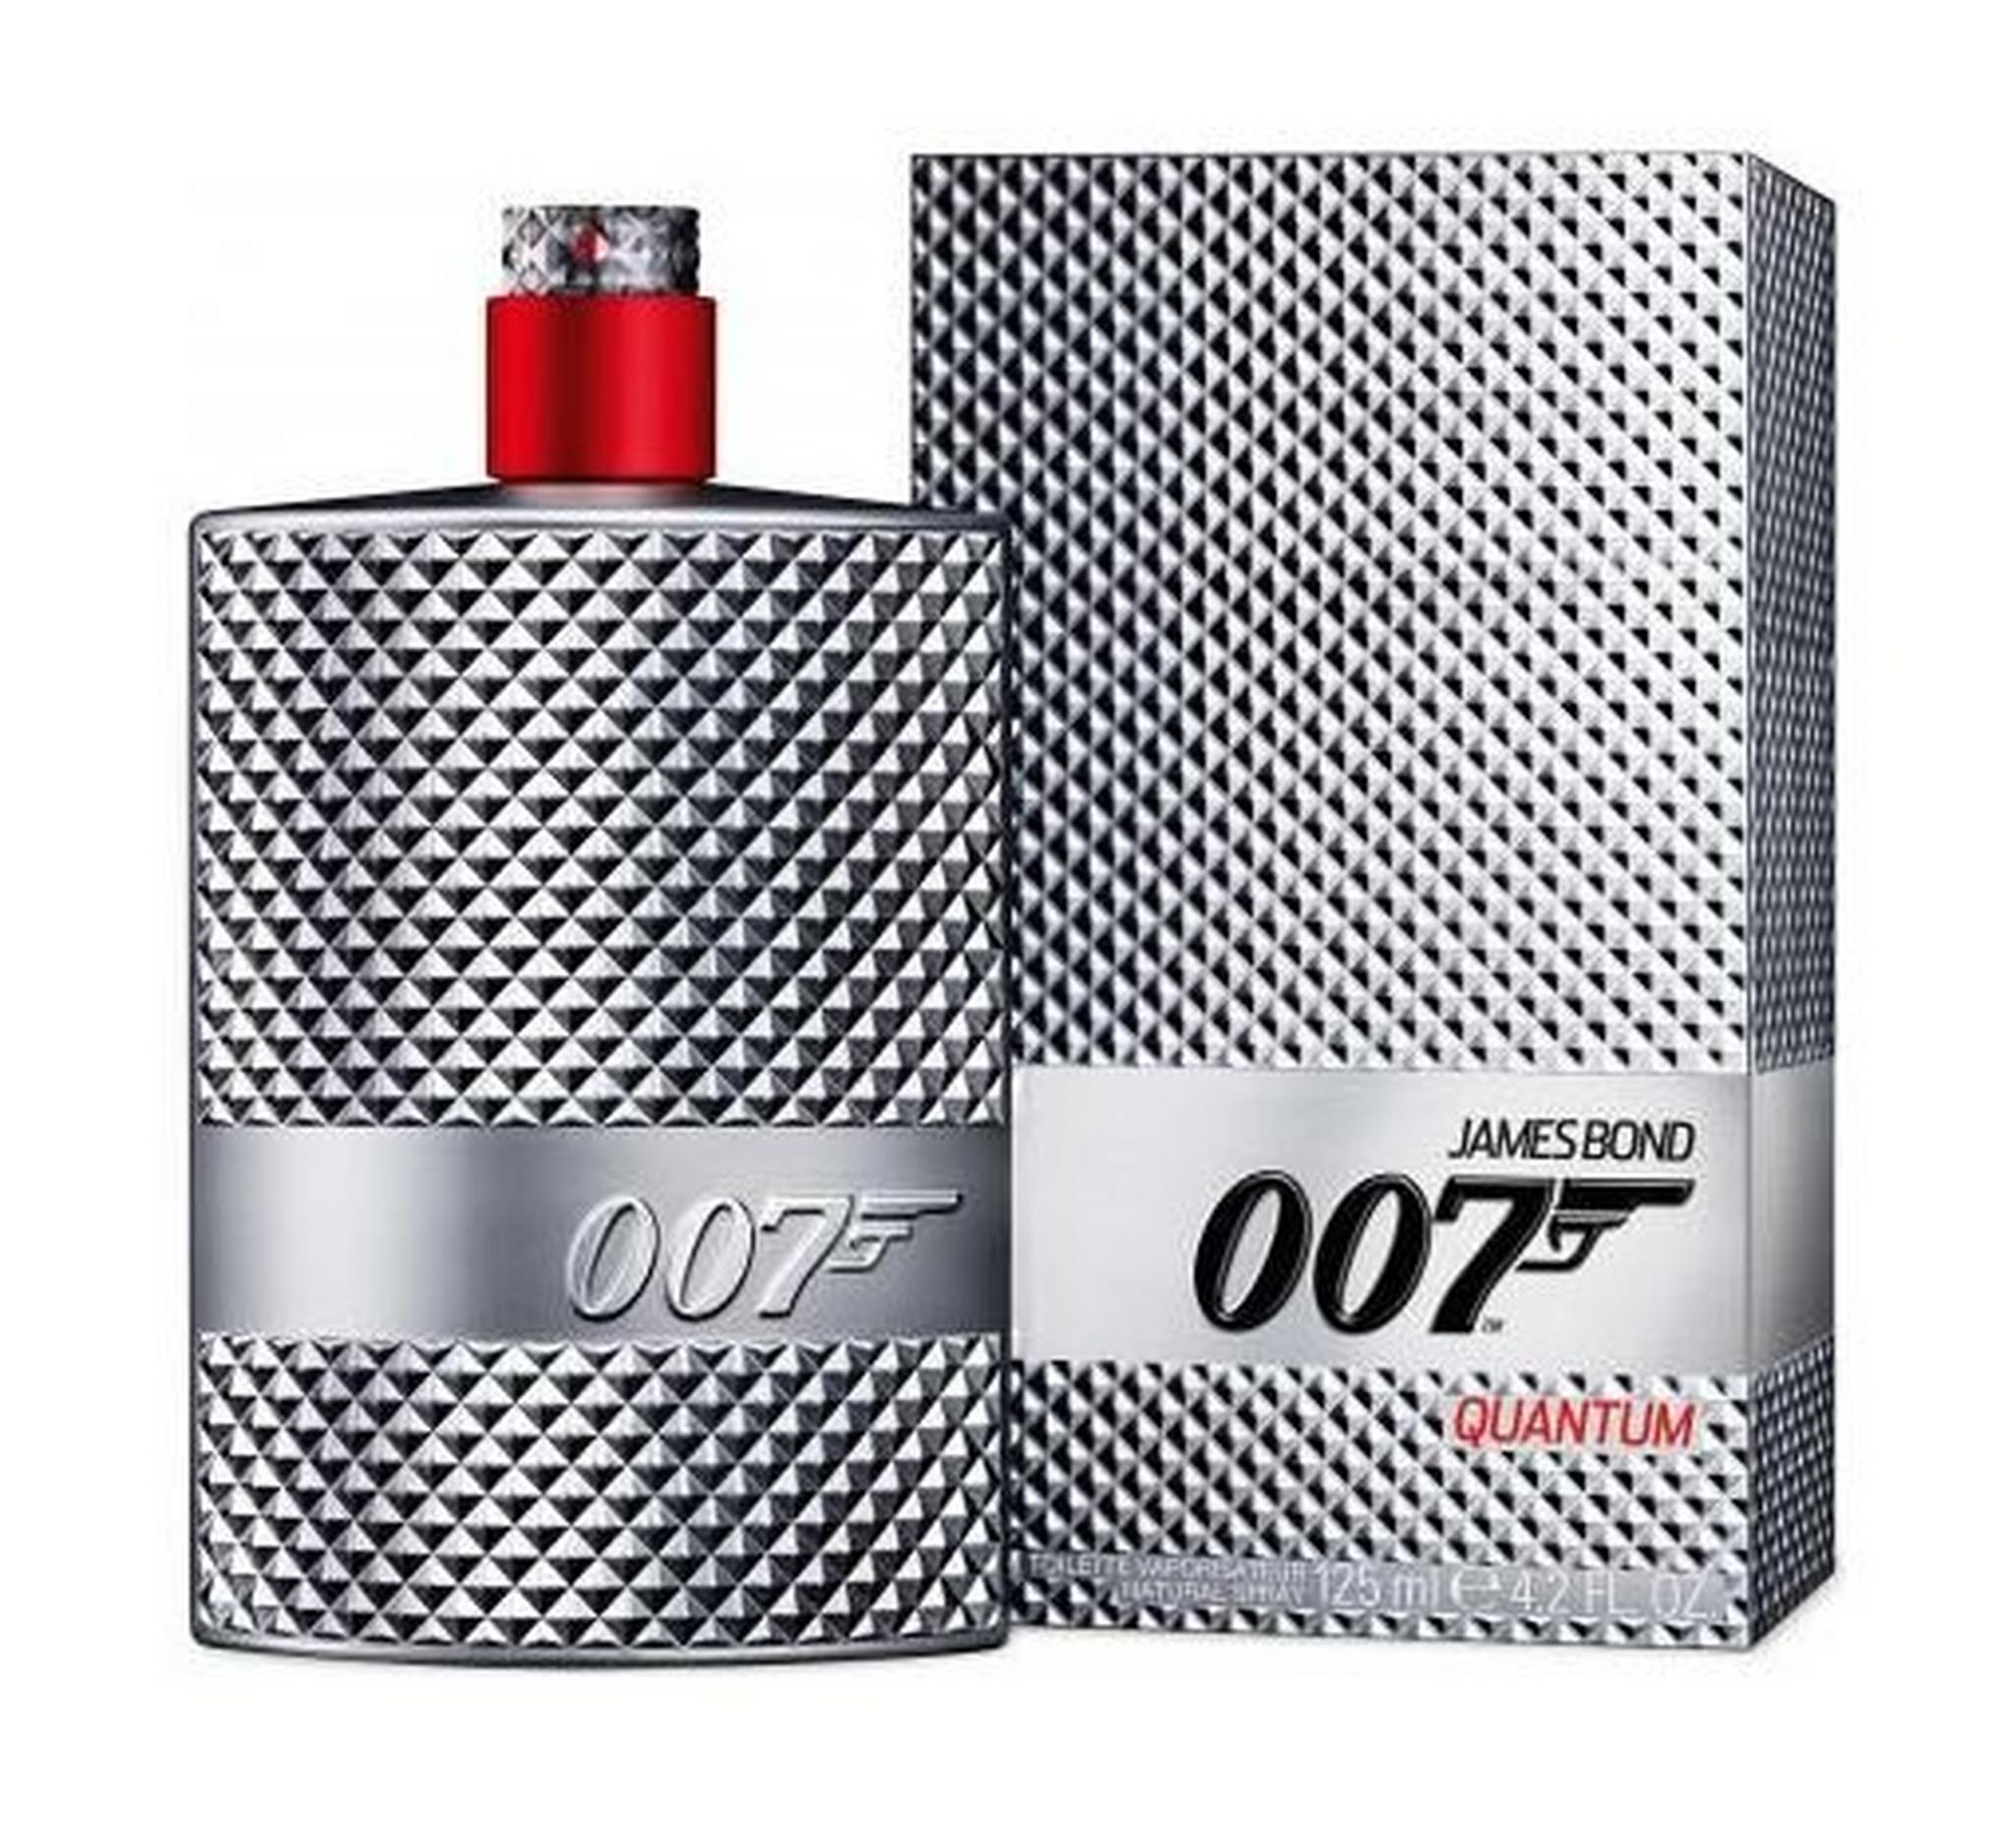 James Bond 007 Quantum For Men 125 ml Eau de Toilette